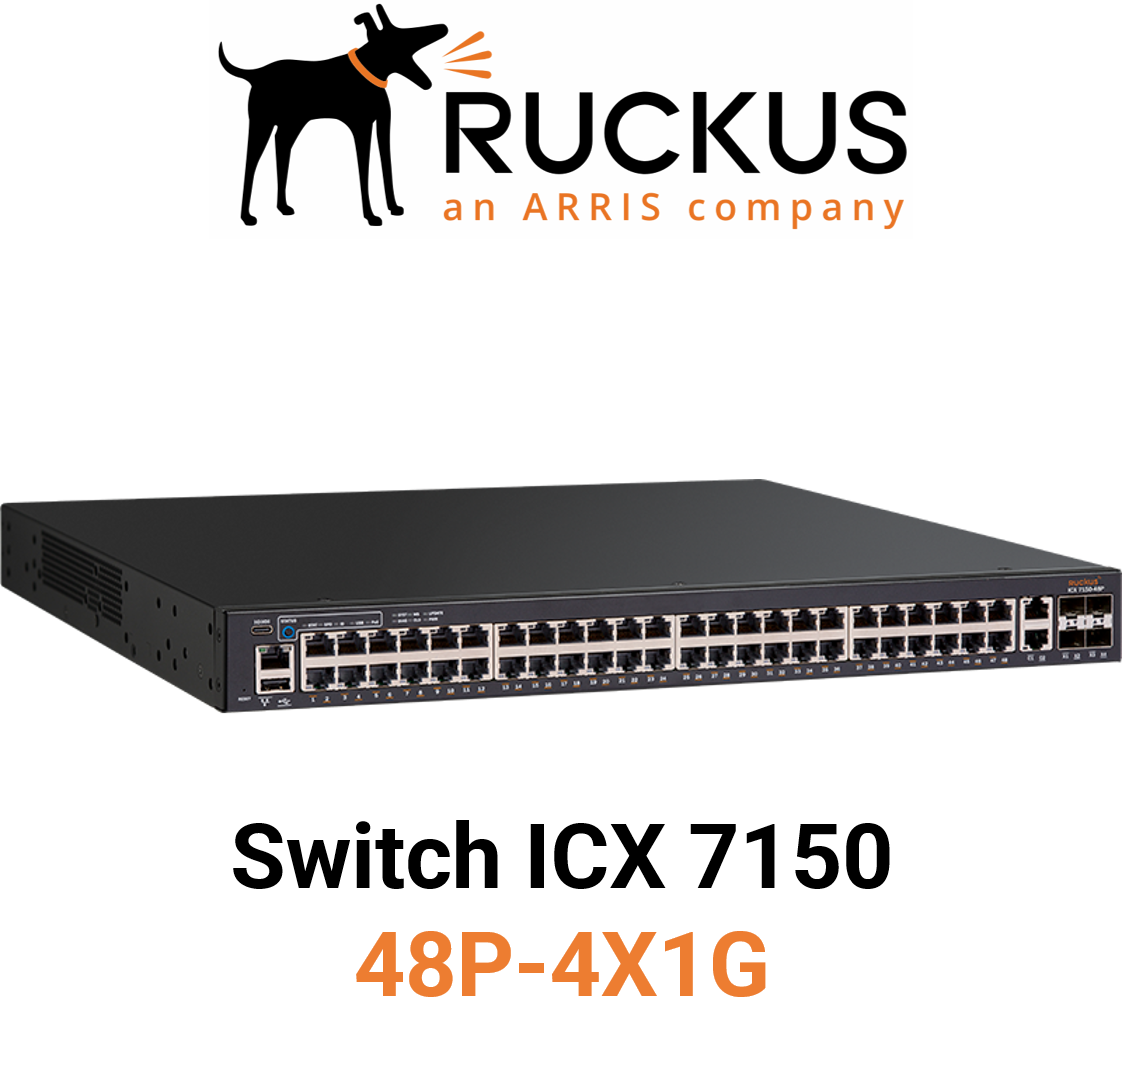 Ruckus ICX7150-48P-4X1G Switch